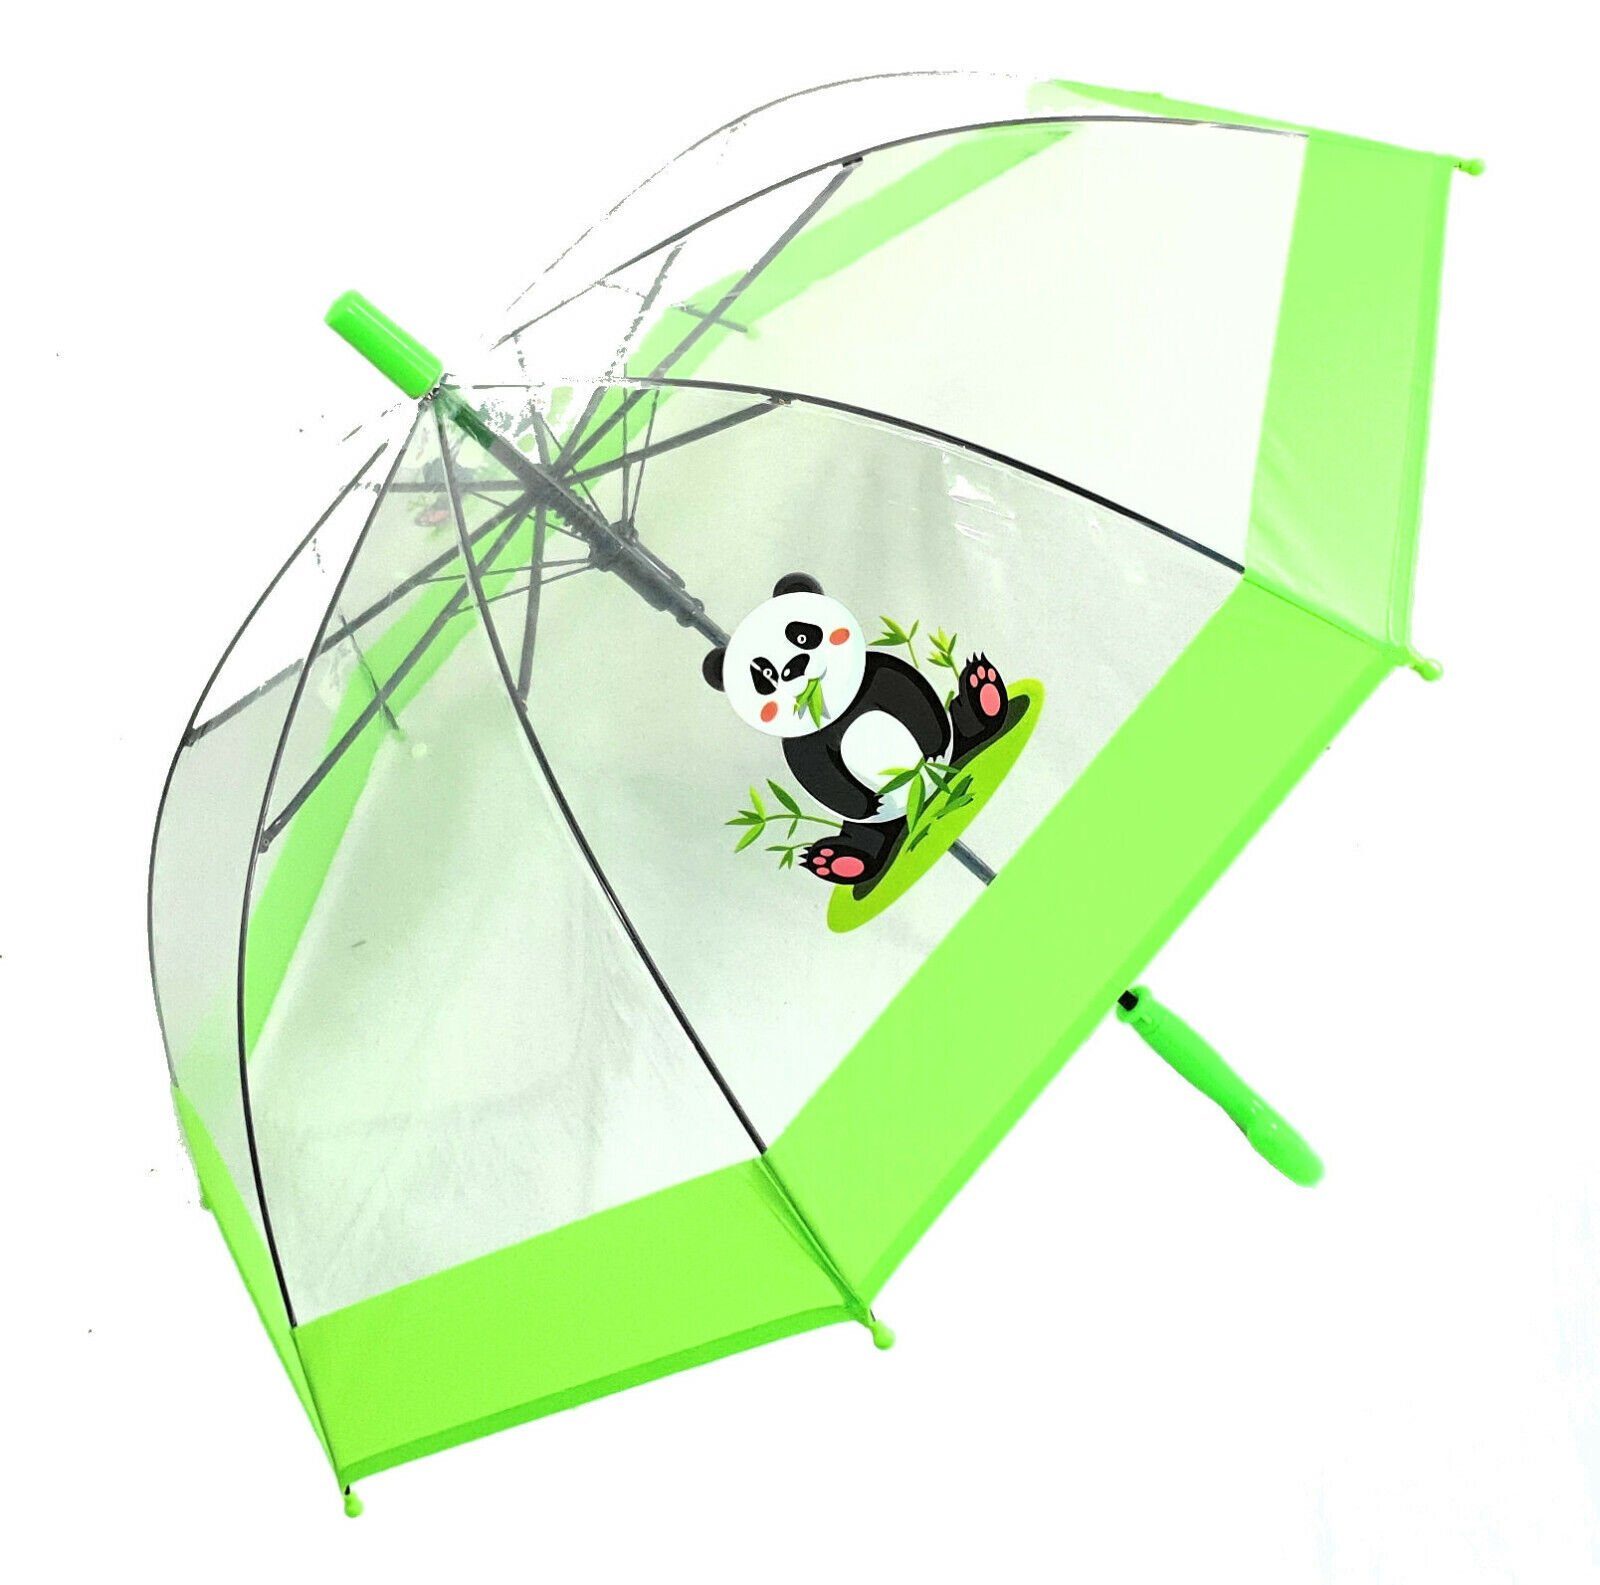 Stockregenschirm Automatik, süßer Dr. Neuser tranparent mit grün durchsichtig Regenschirm Kinder transparent Panda